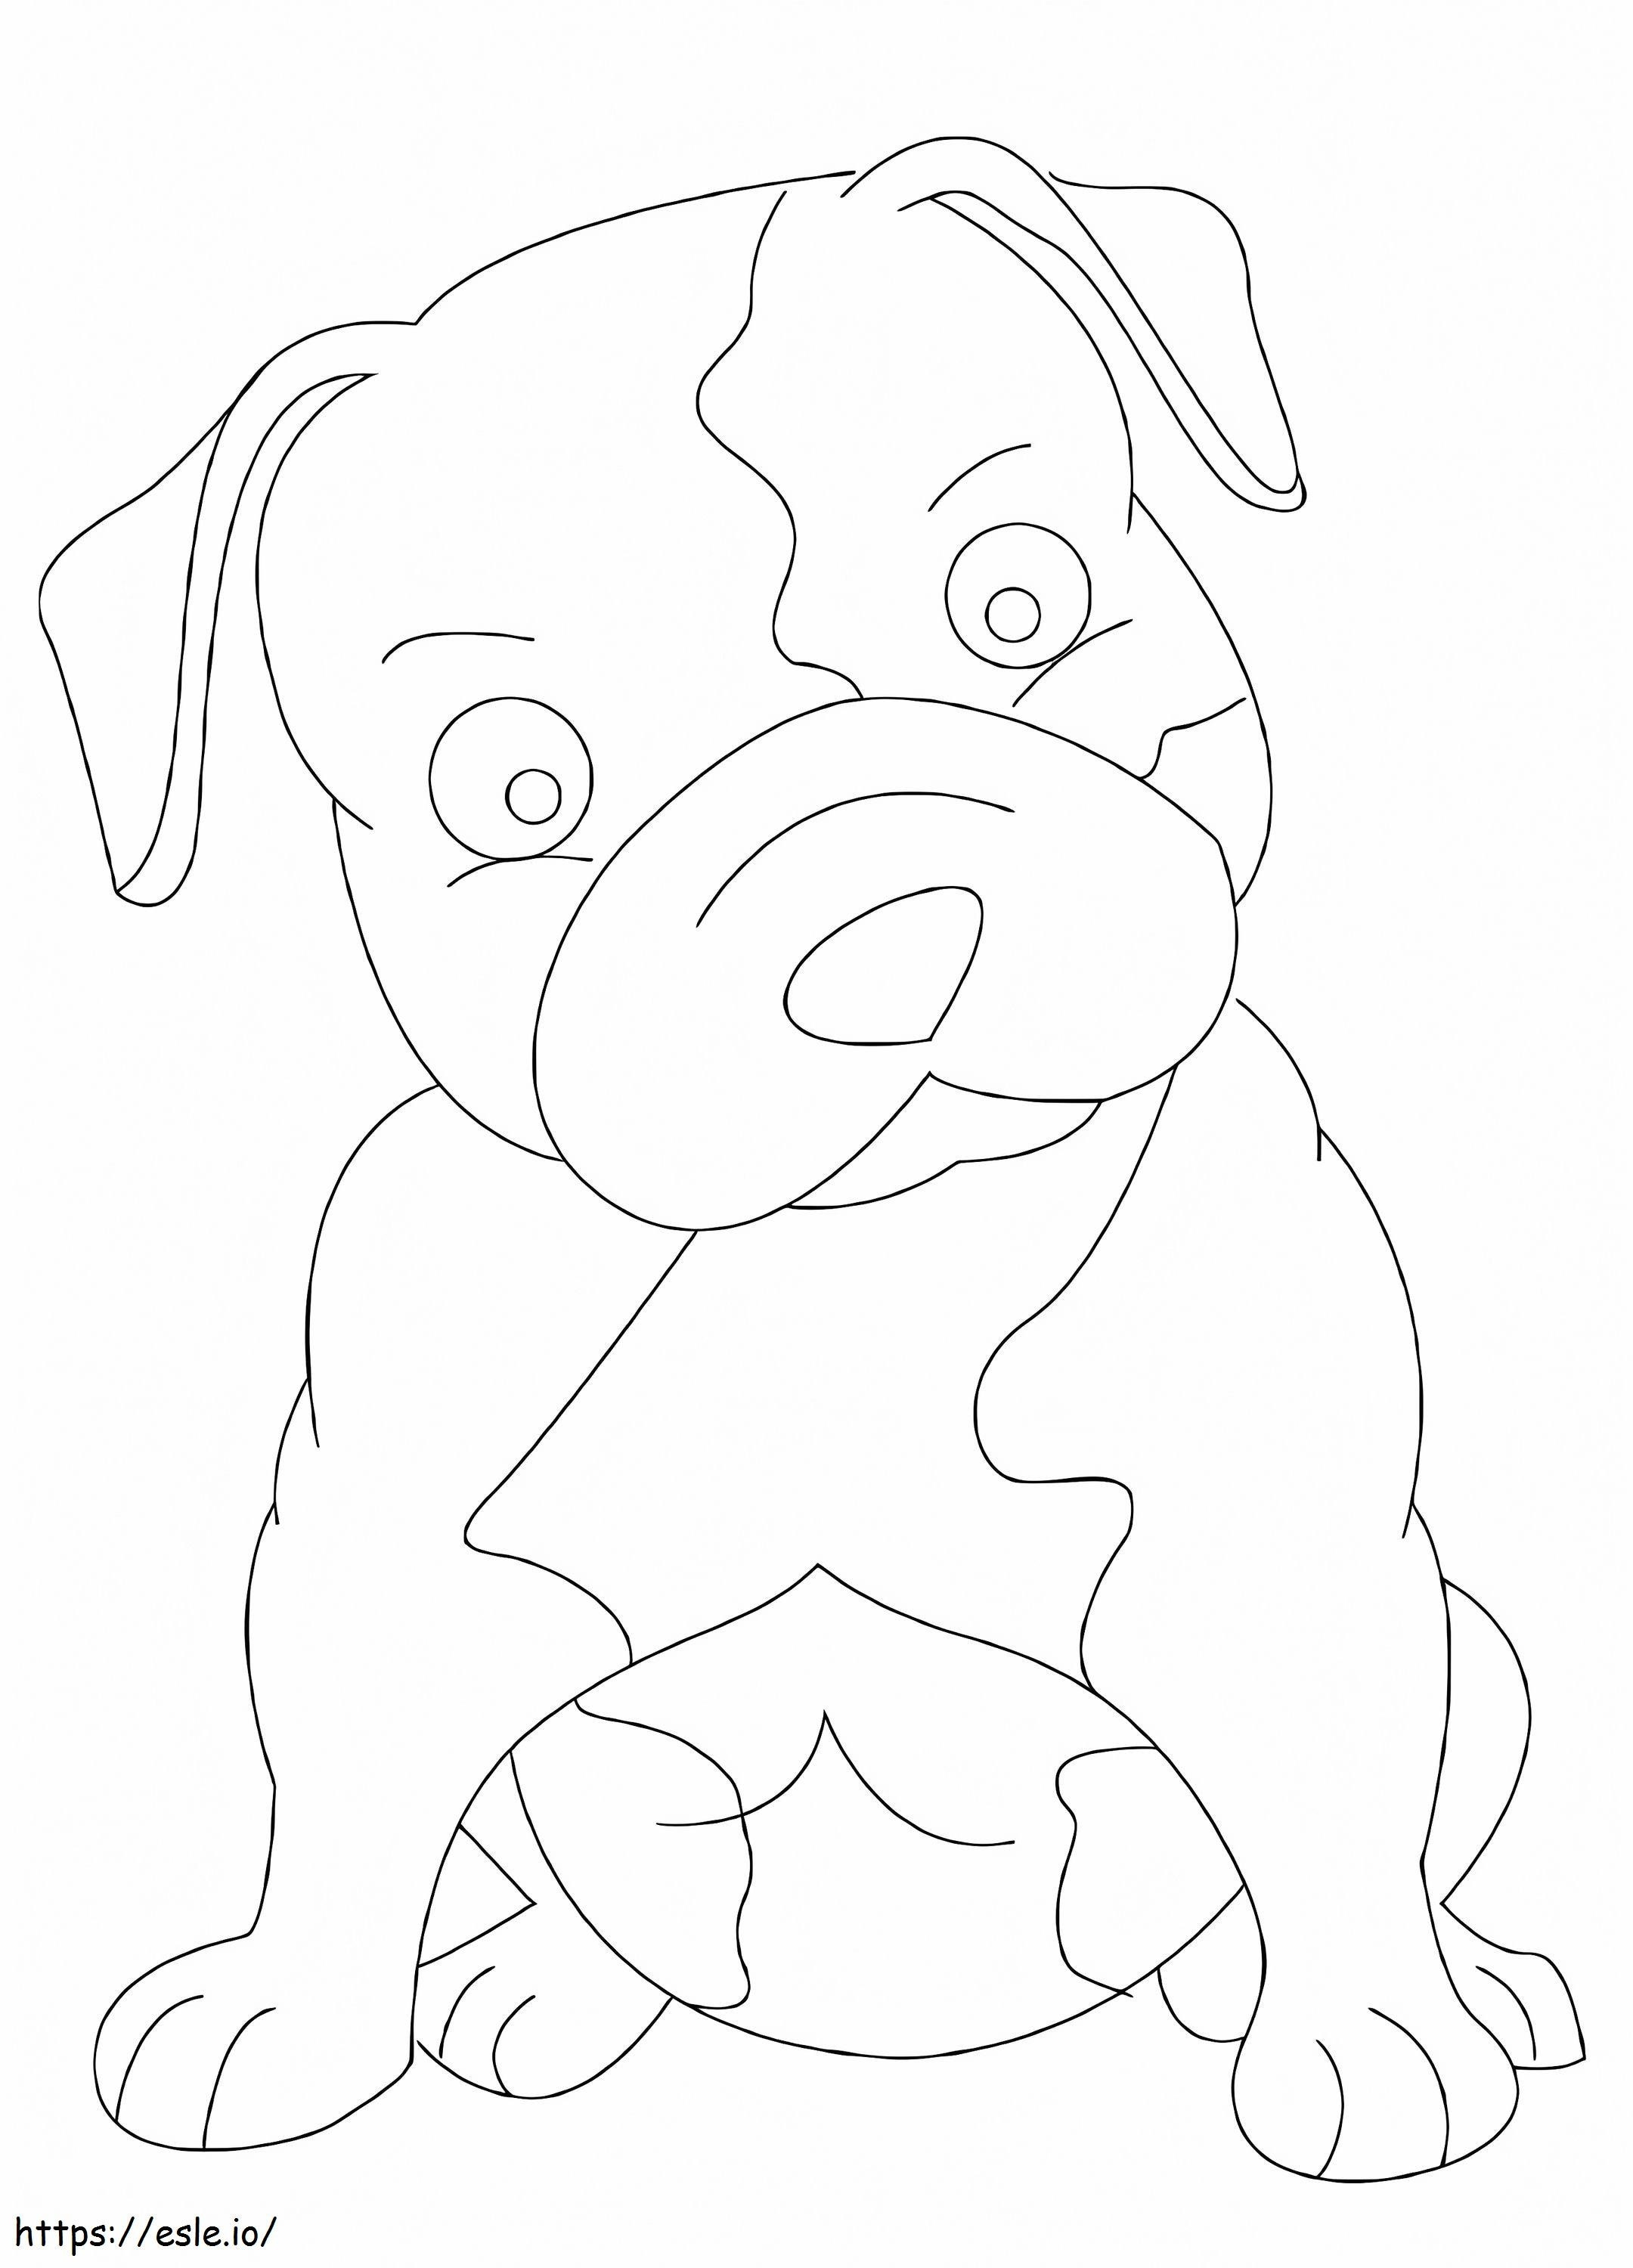 Baby Pitbull Câine de colorat